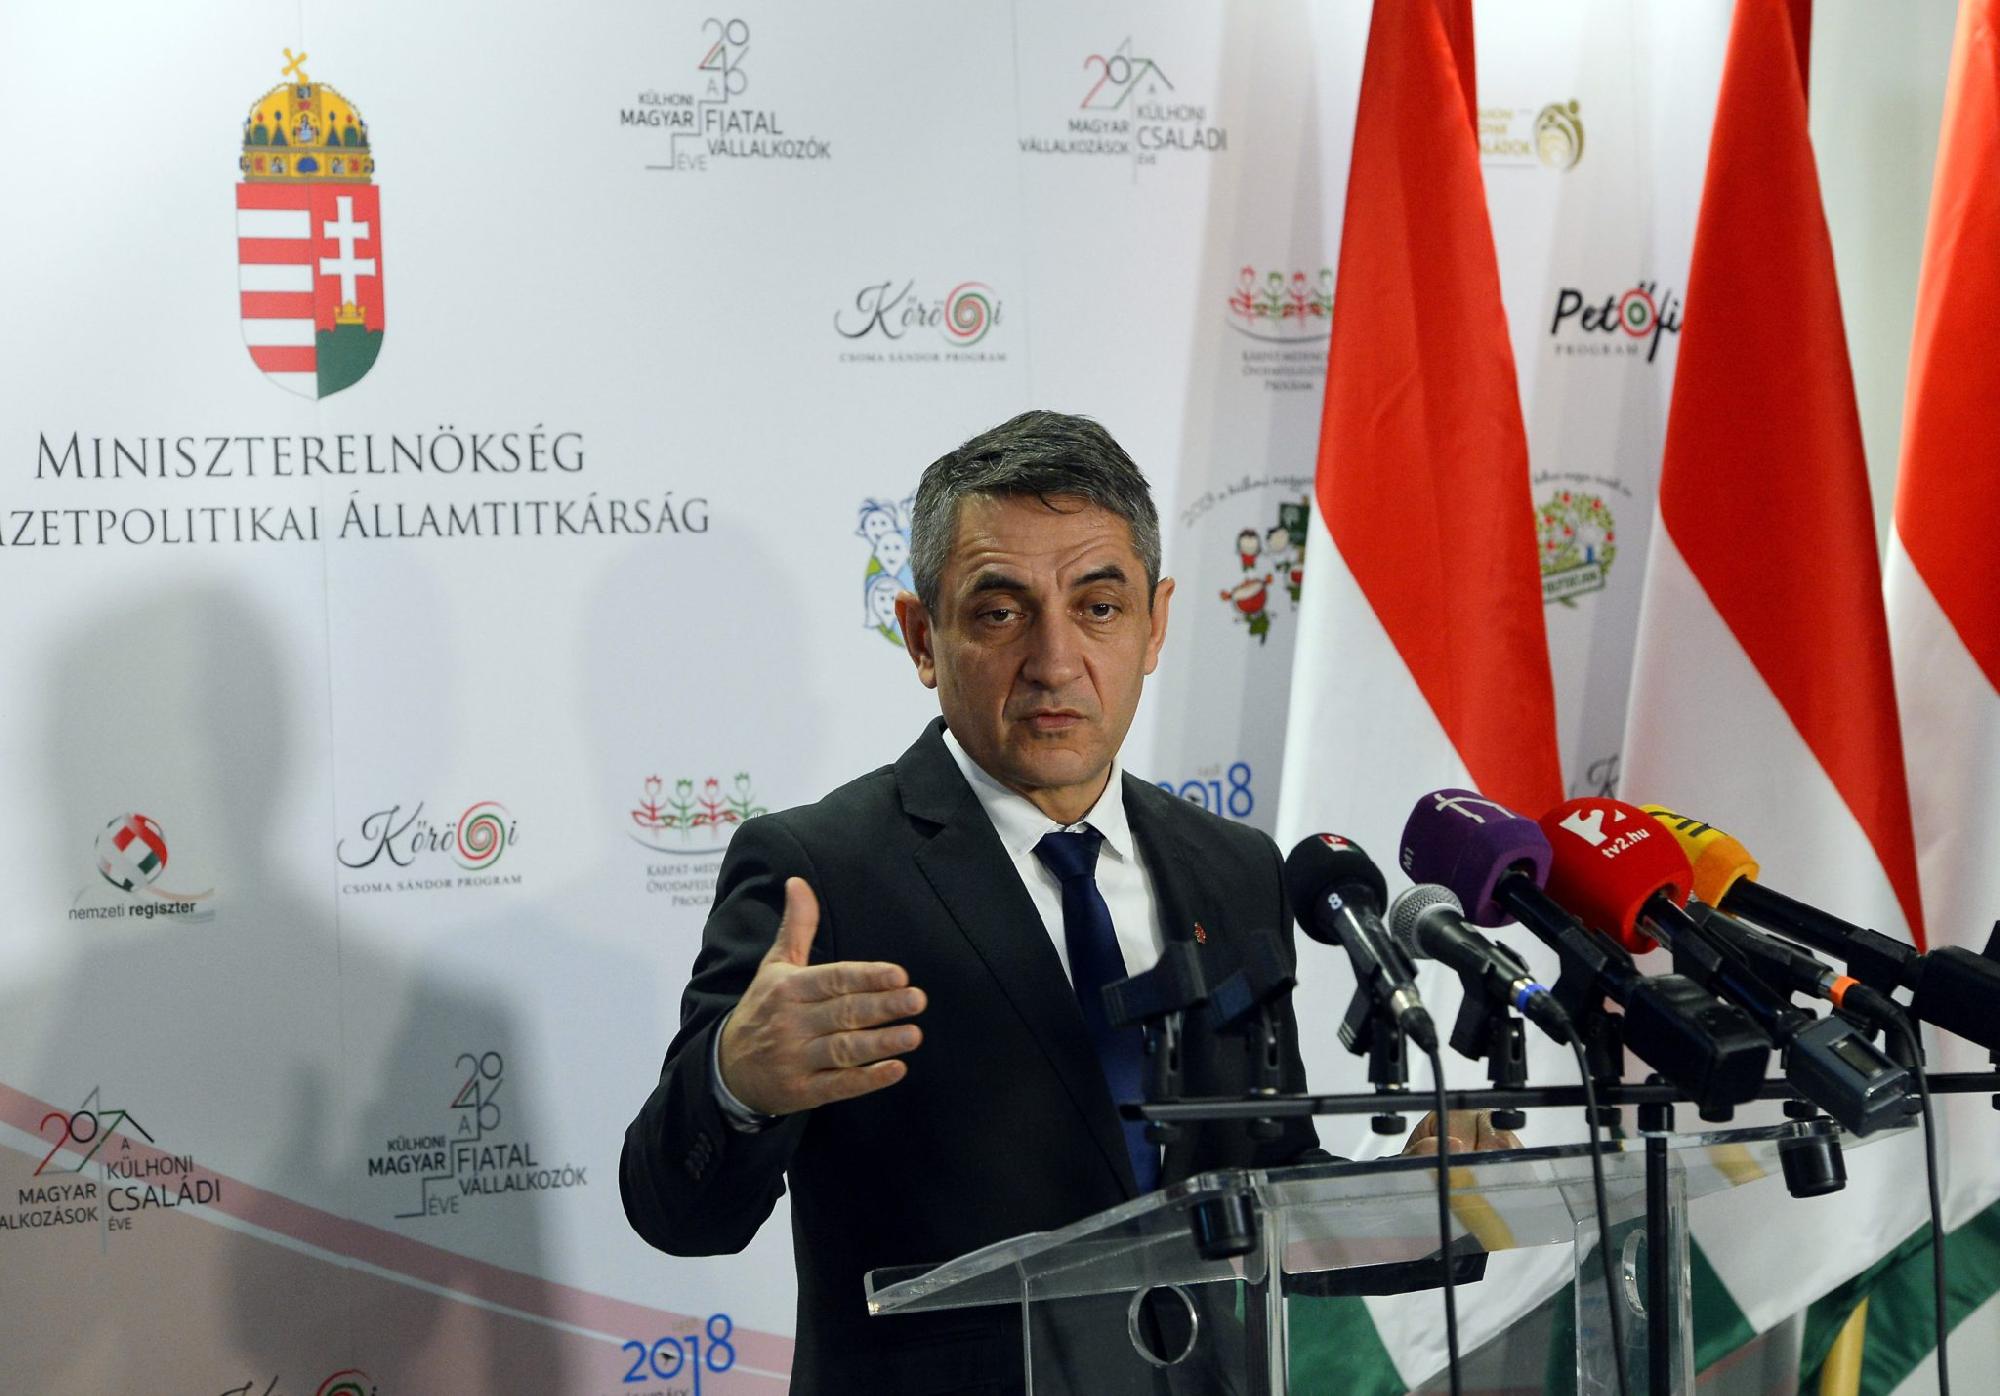 Potápi Árpád: Pályázatokat hirdetett a Miniszterelnökség nemzetpolitikai államtitkársága